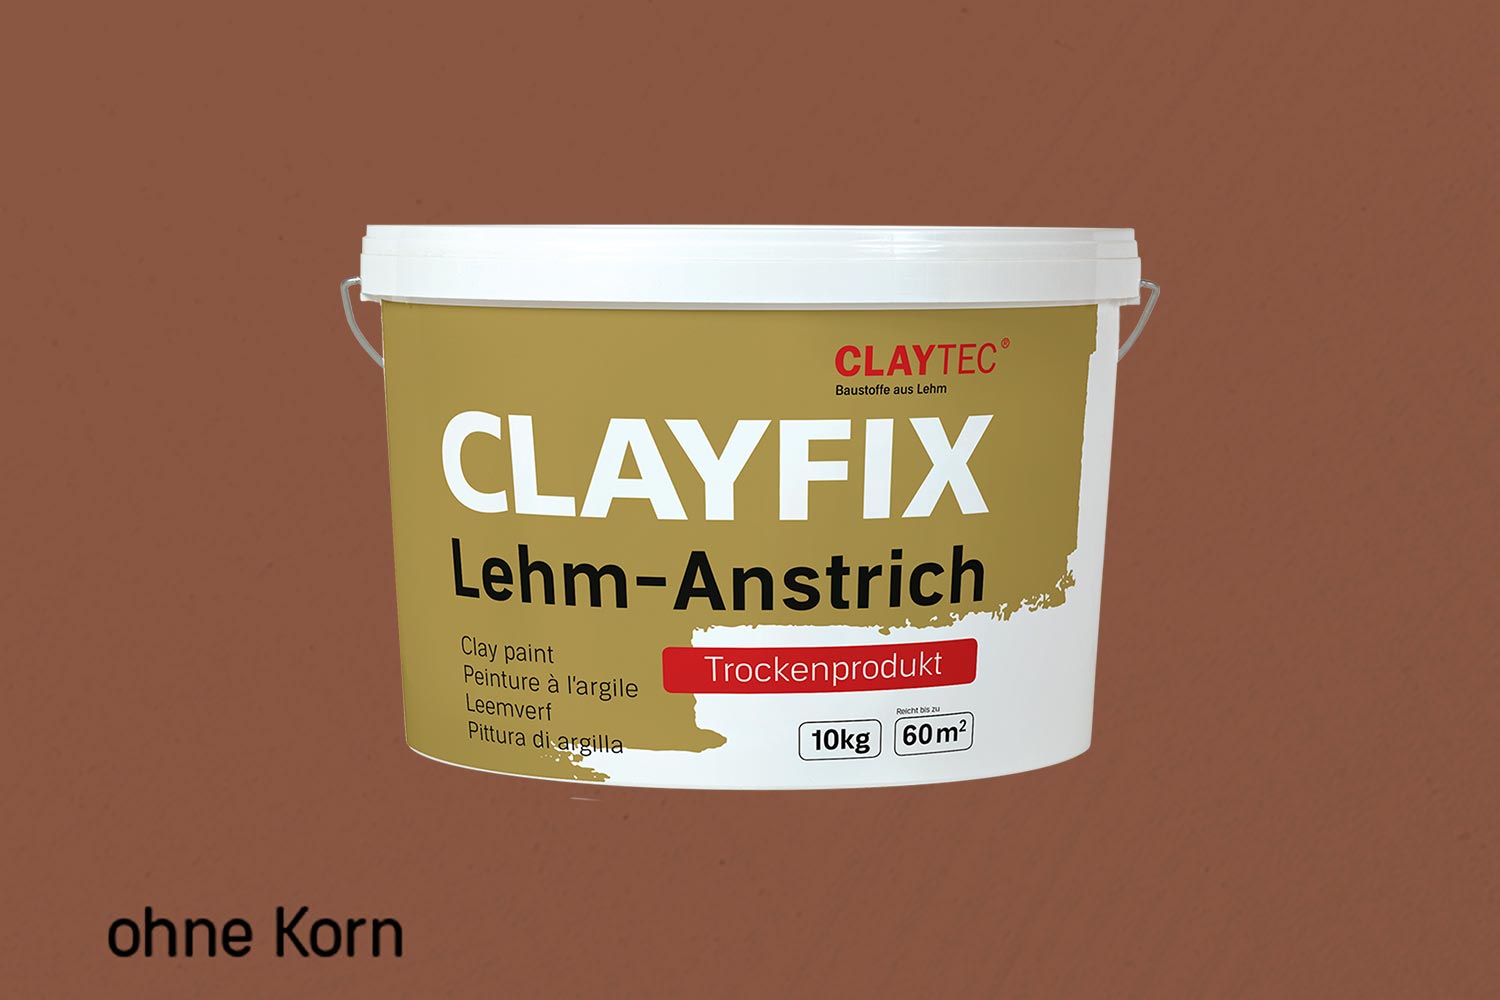 Claytec Clayfix Lehm-Anstrich ohne Korn